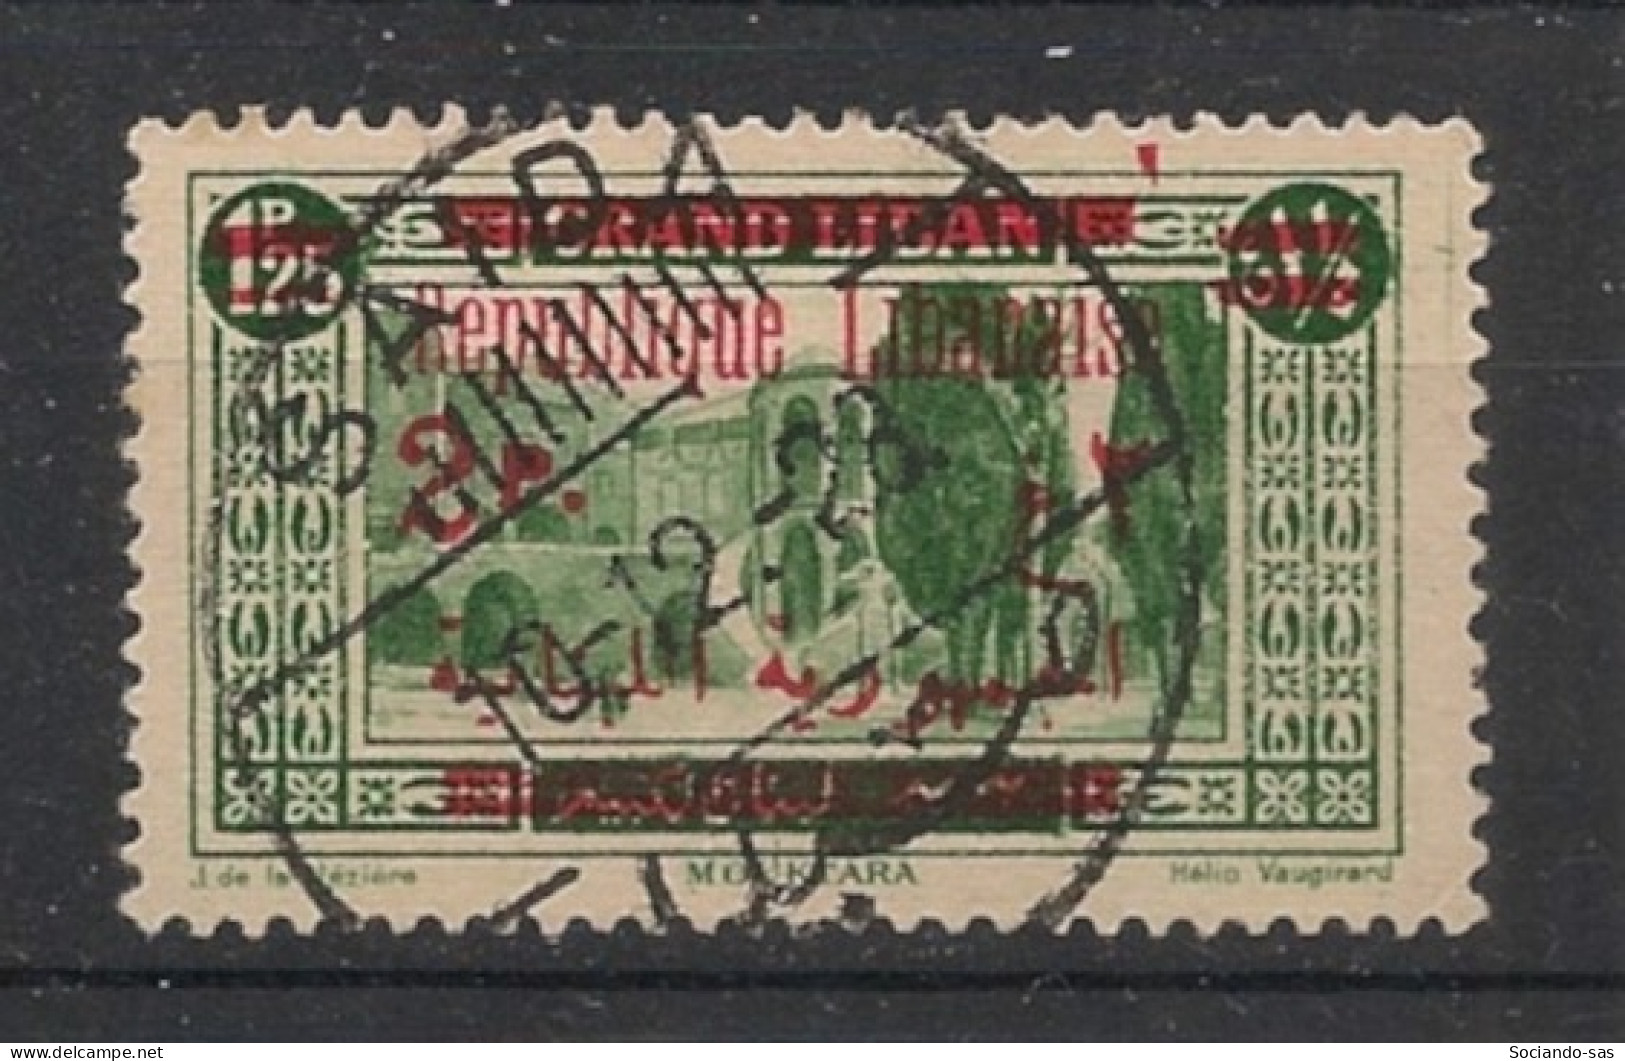 GRAND LIBAN - 1928-29 - N°YT. 118 - Mouktara 2pi Sur 1pi25 Vert - Oblitéré / Used - Oblitérés